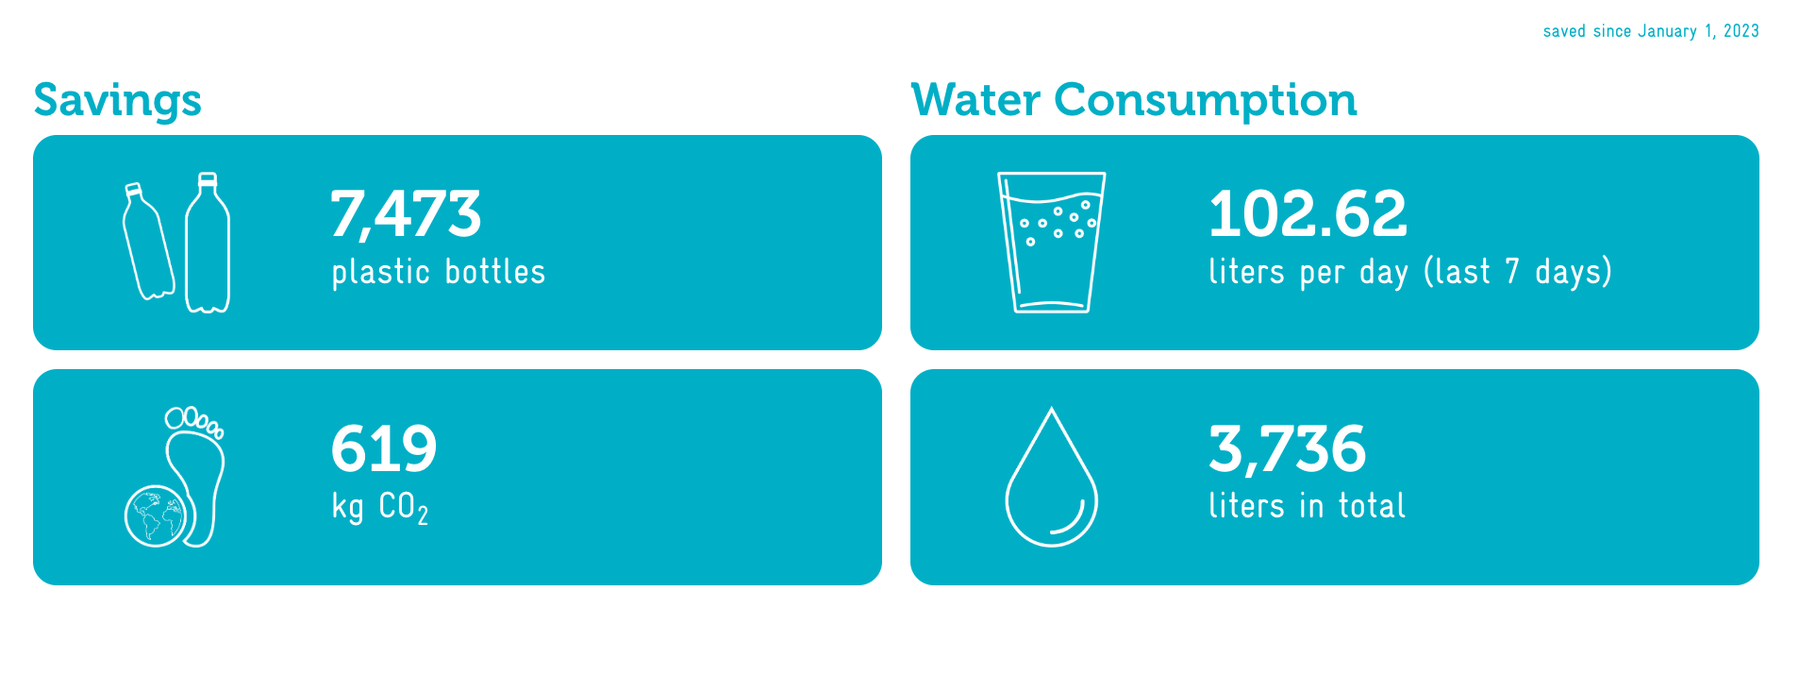 Bild Messungen Wasser für Wasser Savings und Water Consumption